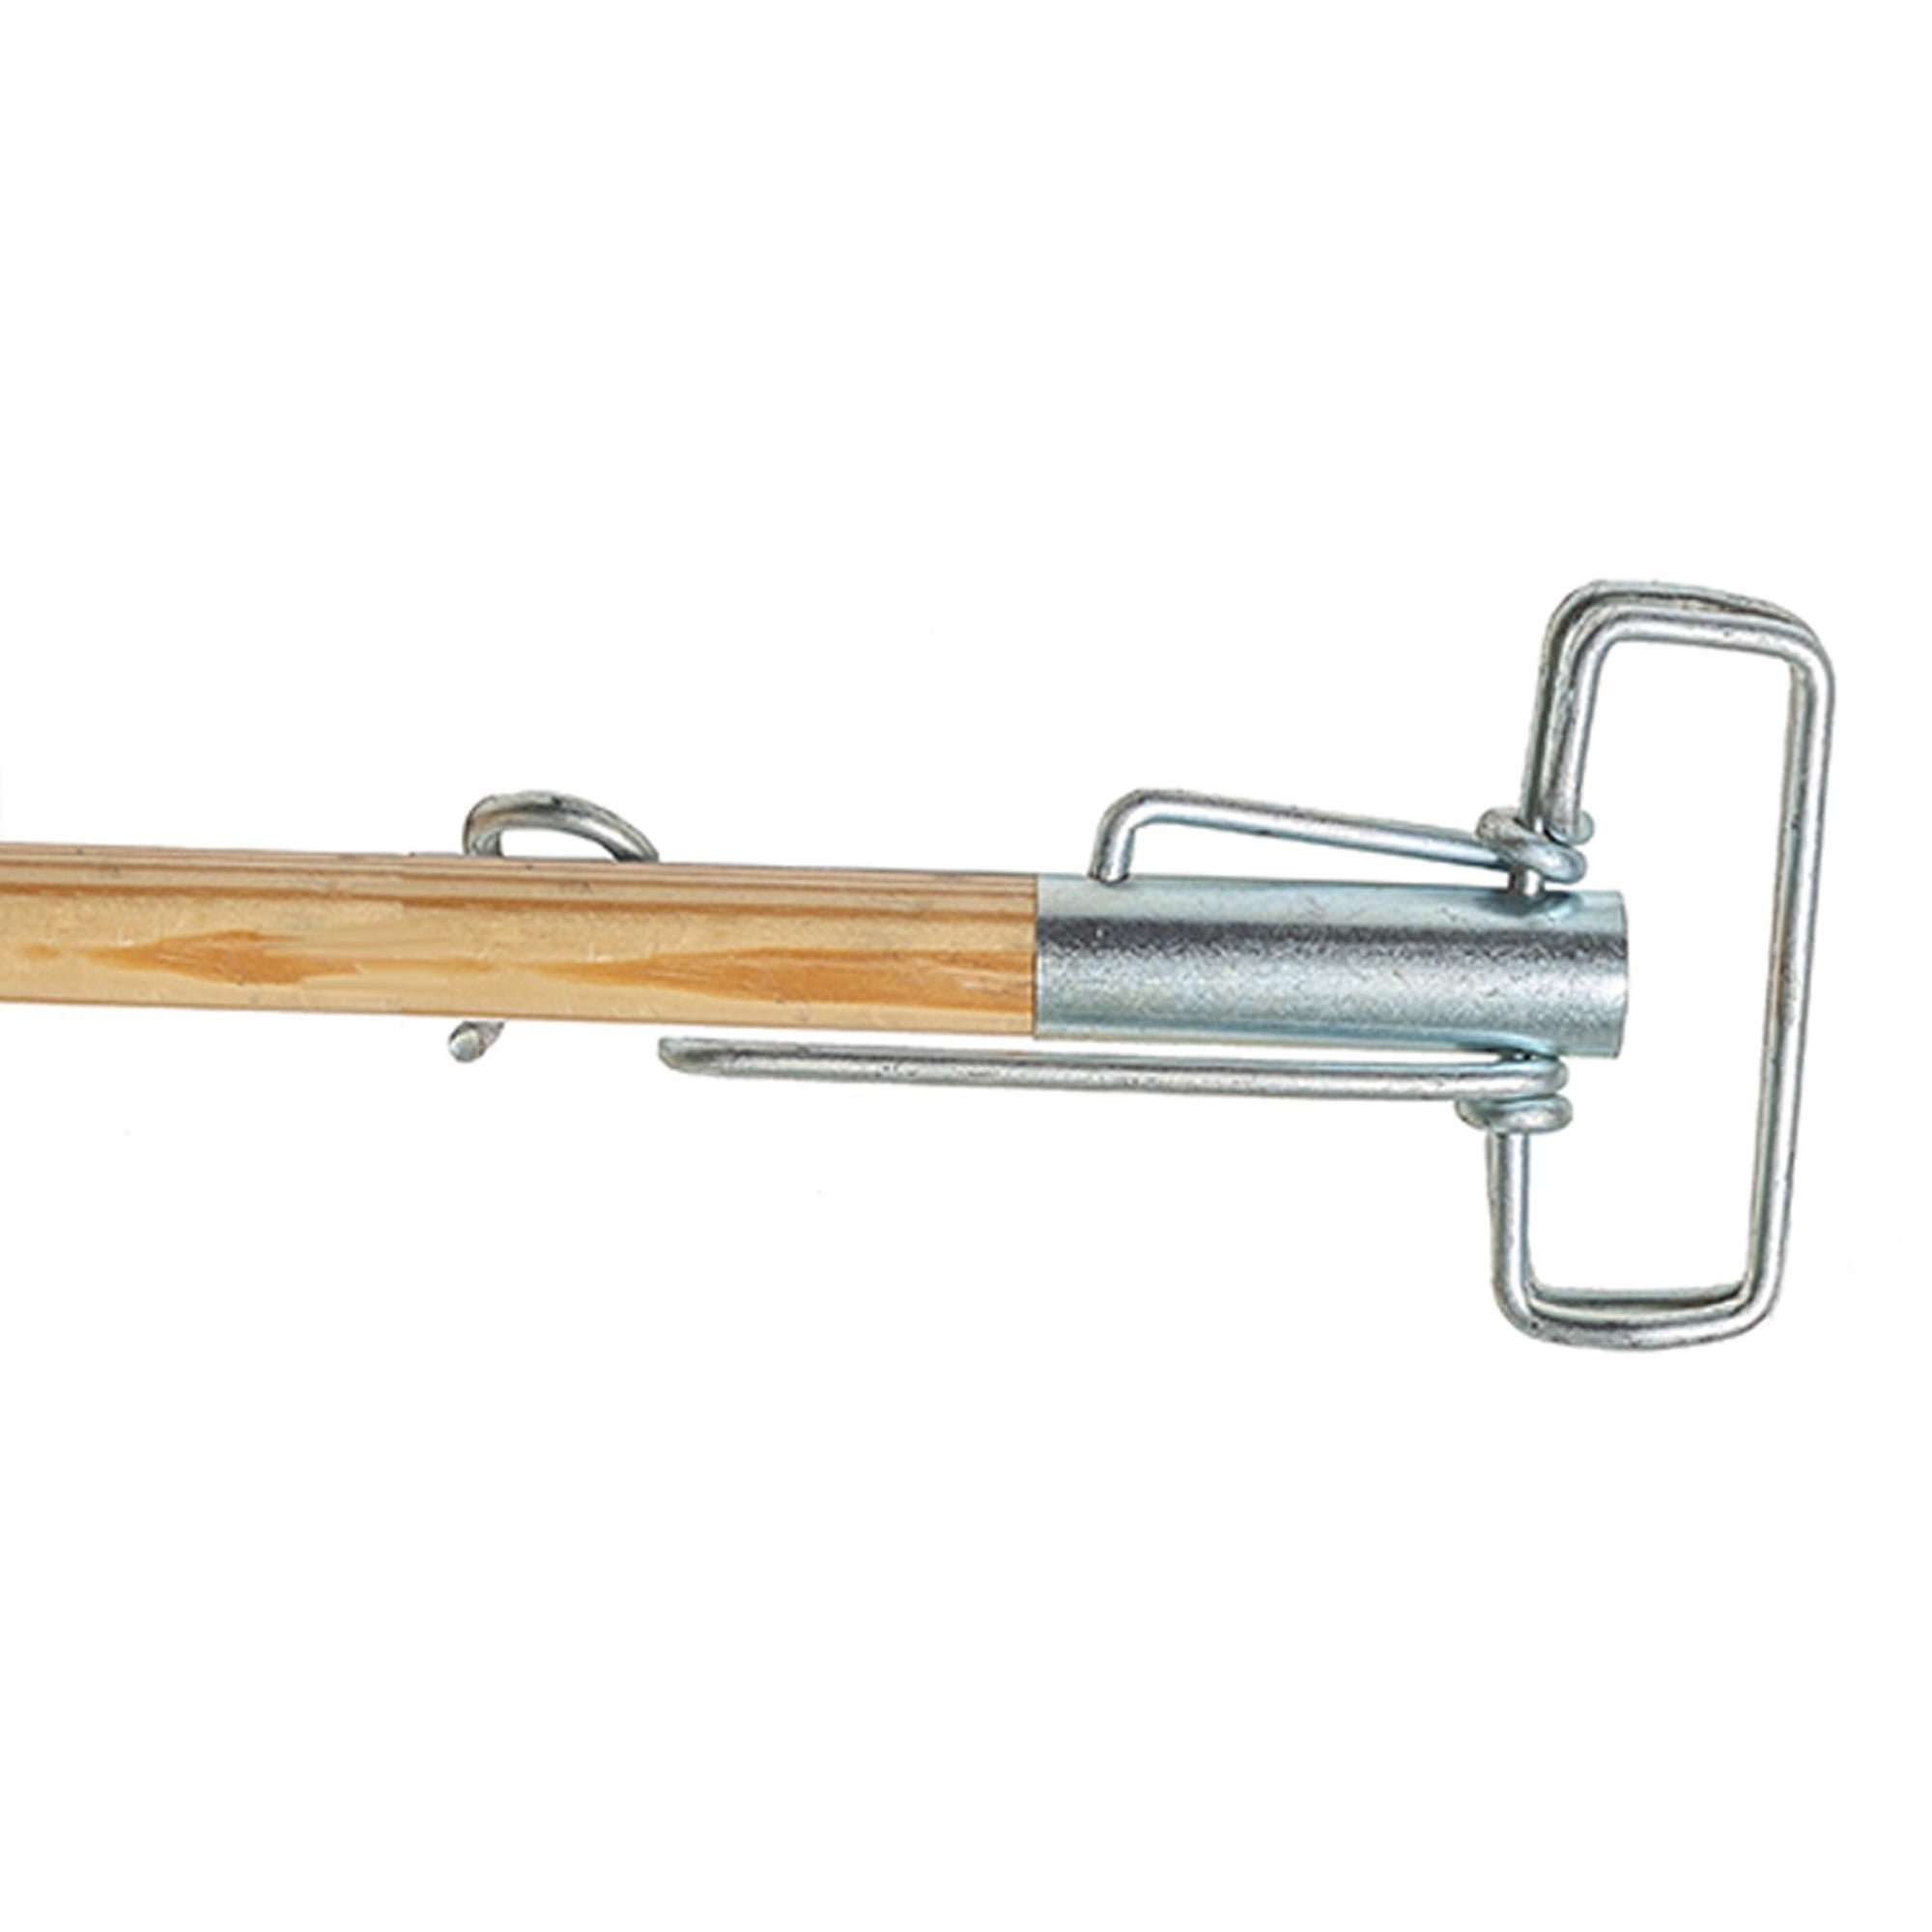 genuine-joe-metal-sure-grip-mop-handle-60-length-113-diameter-brown-metal-1-each_gjo18415 - 1